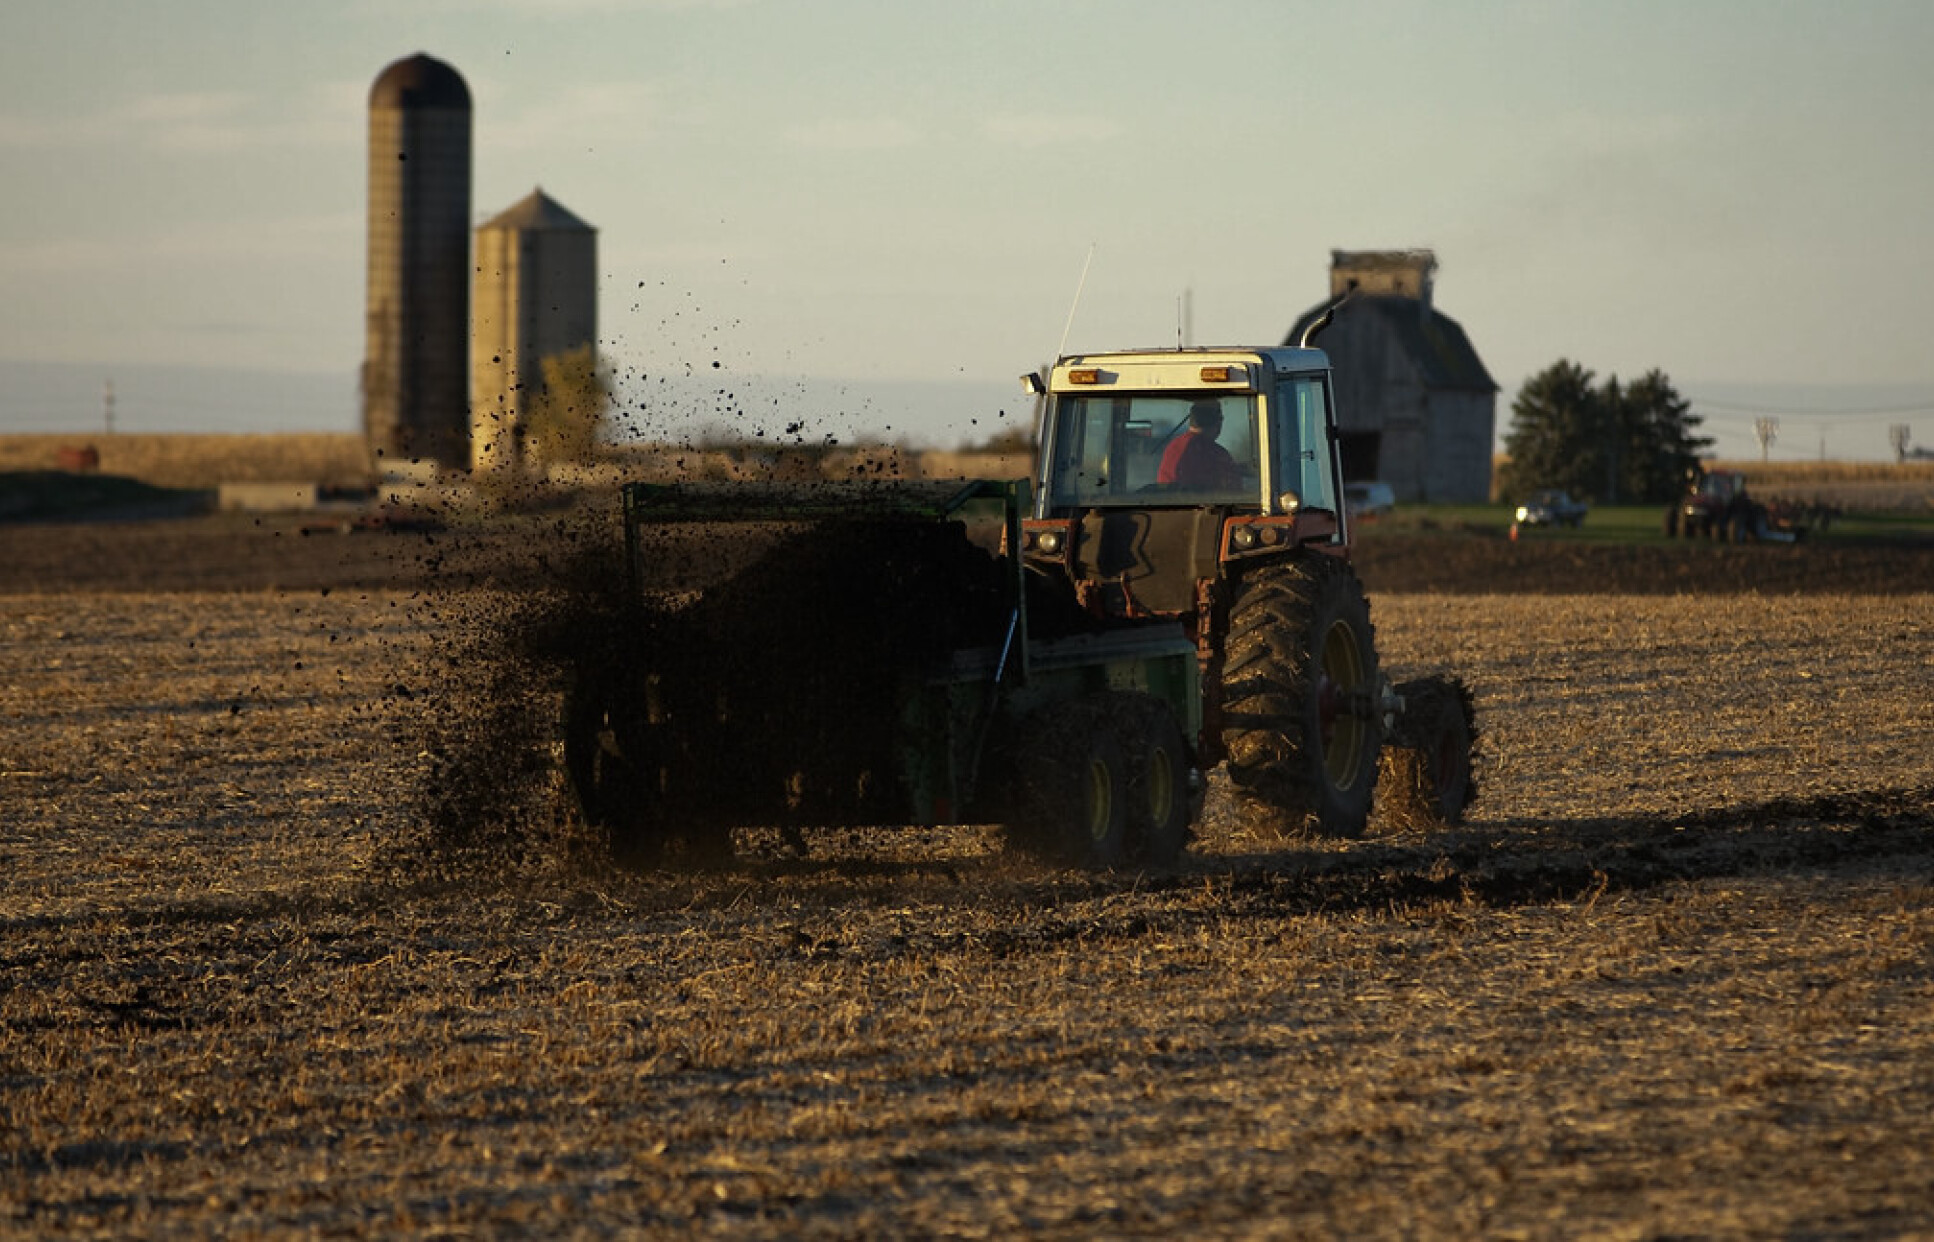 Fertilizer being spread onto agricultural soil. Image credit: CityofGeneva Flickr